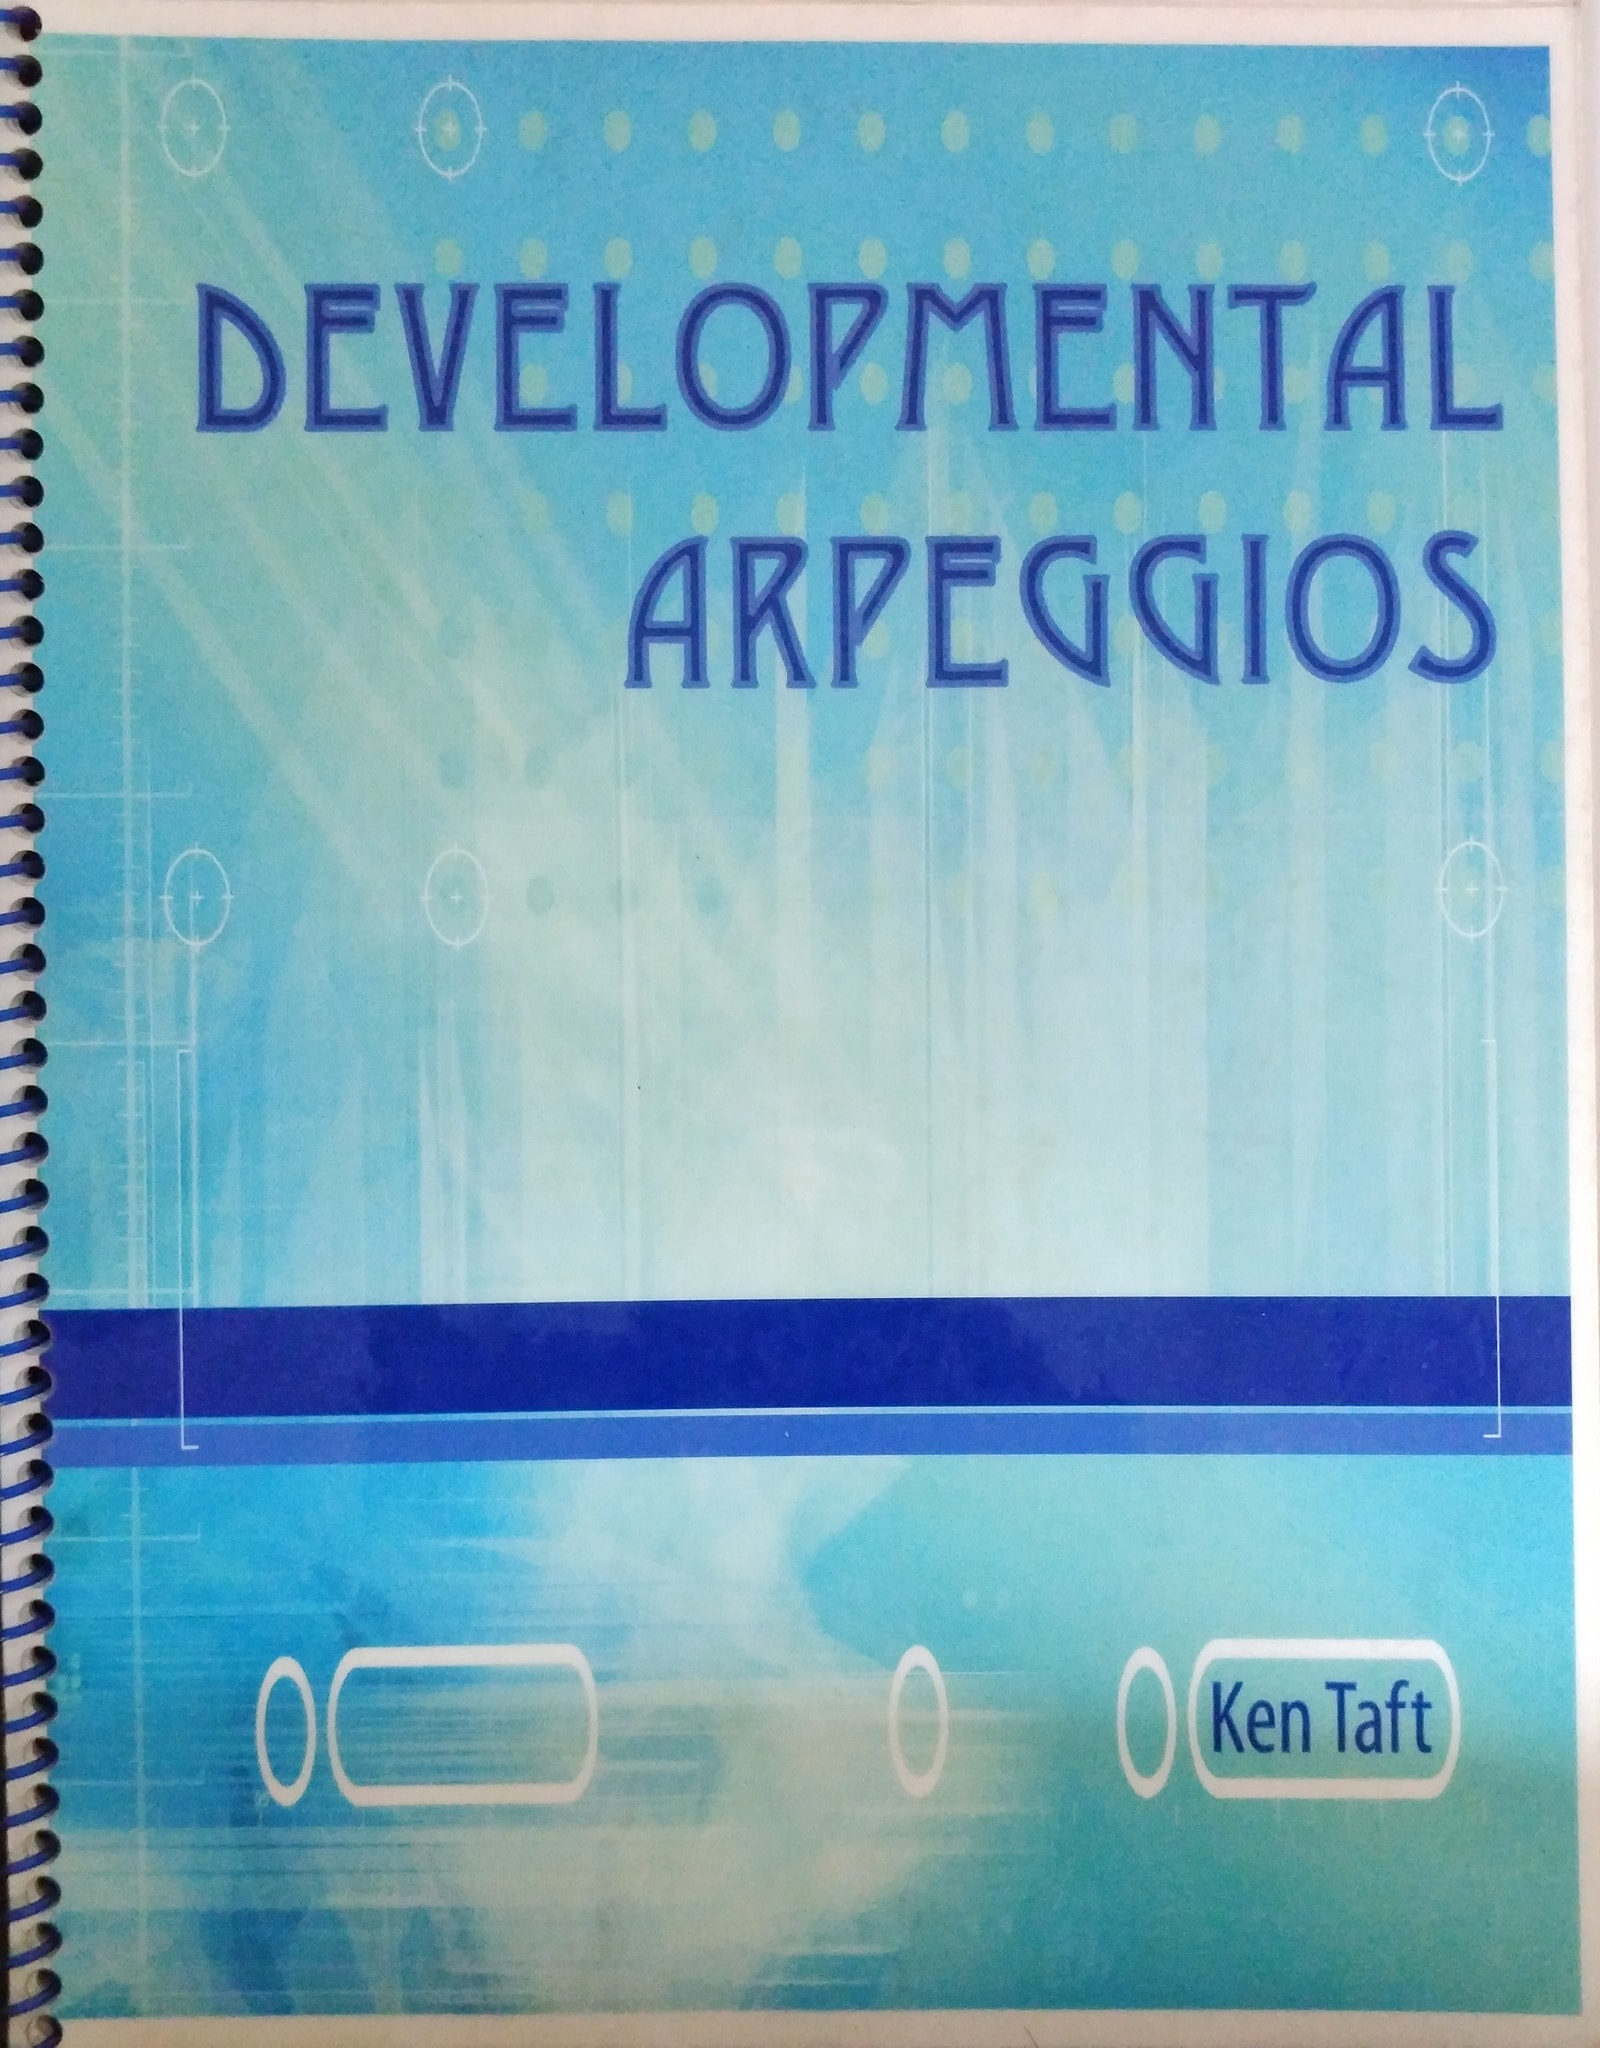 Developmental Arpeggios by Ken Taft